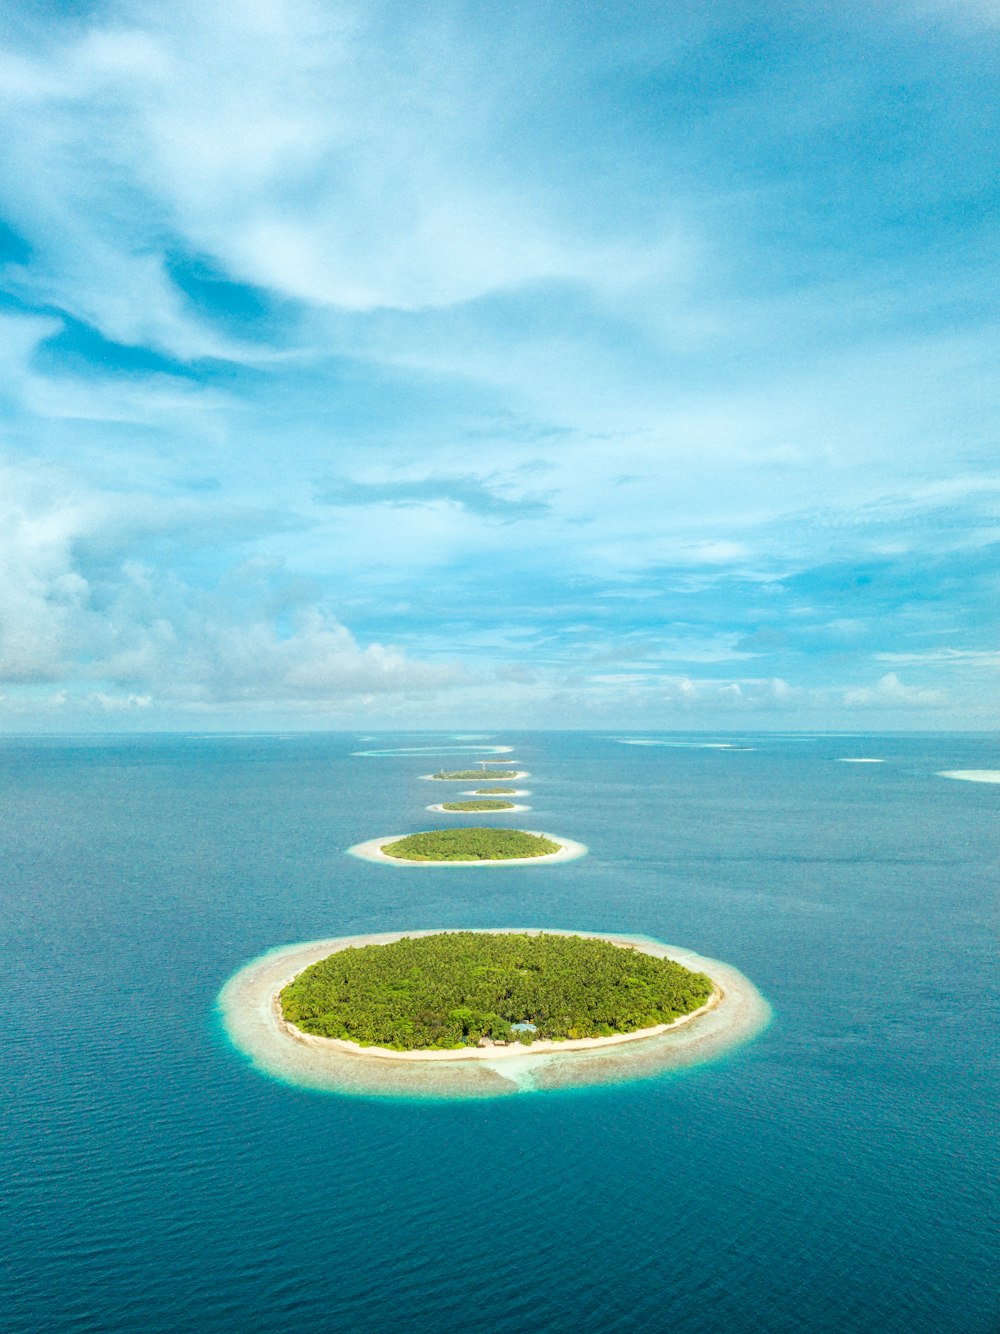 Photographie aérienne d’îlots verts